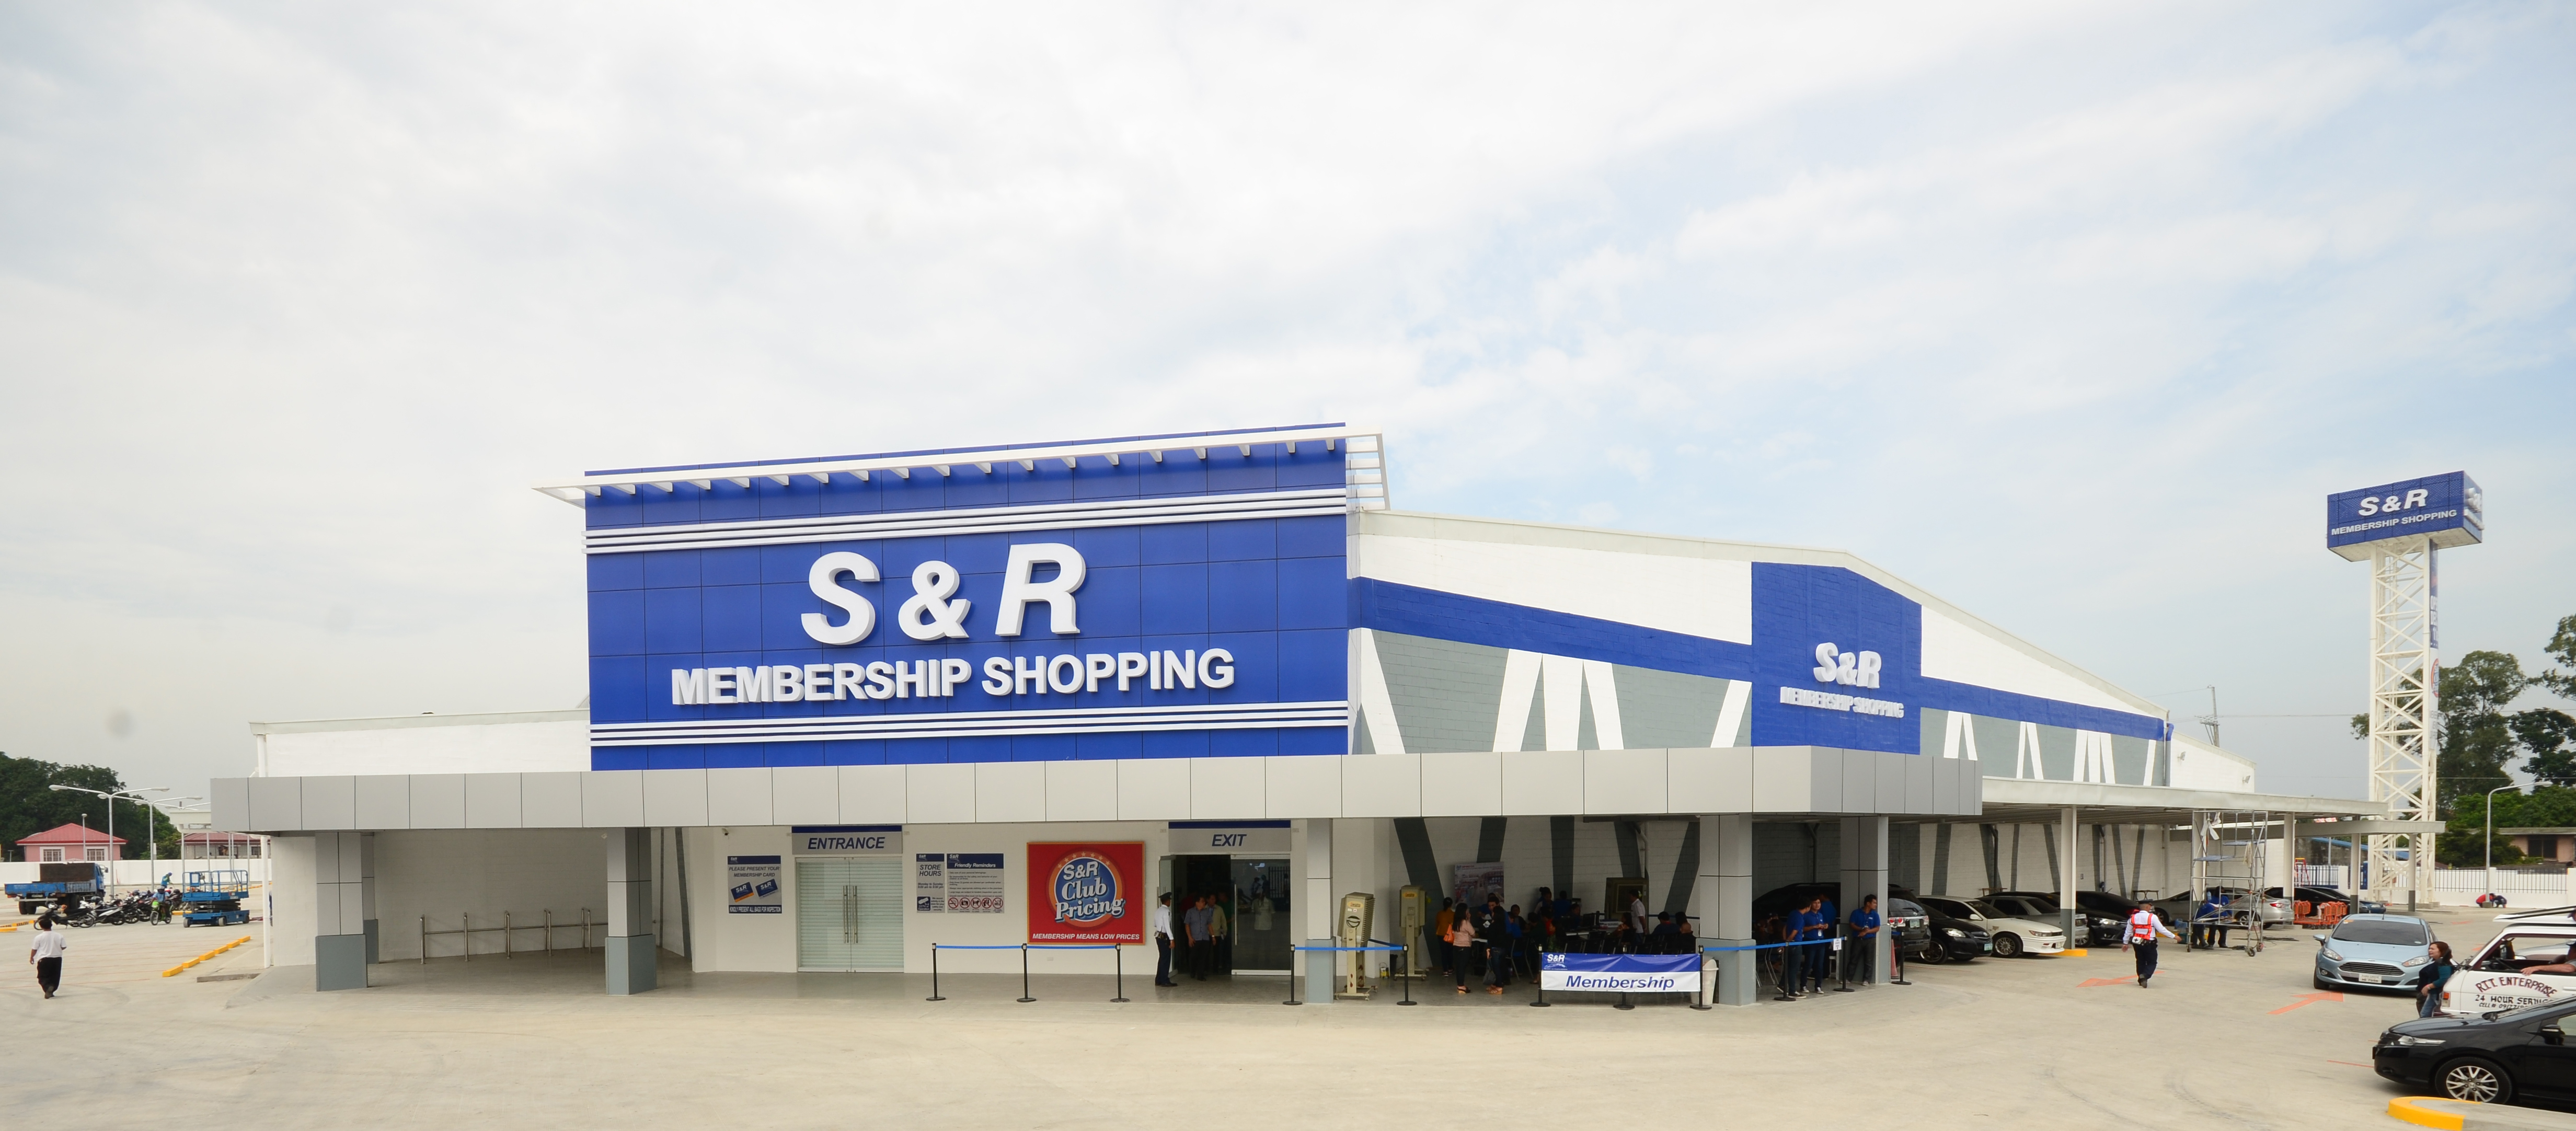 S&R membership shopping cdo facade 